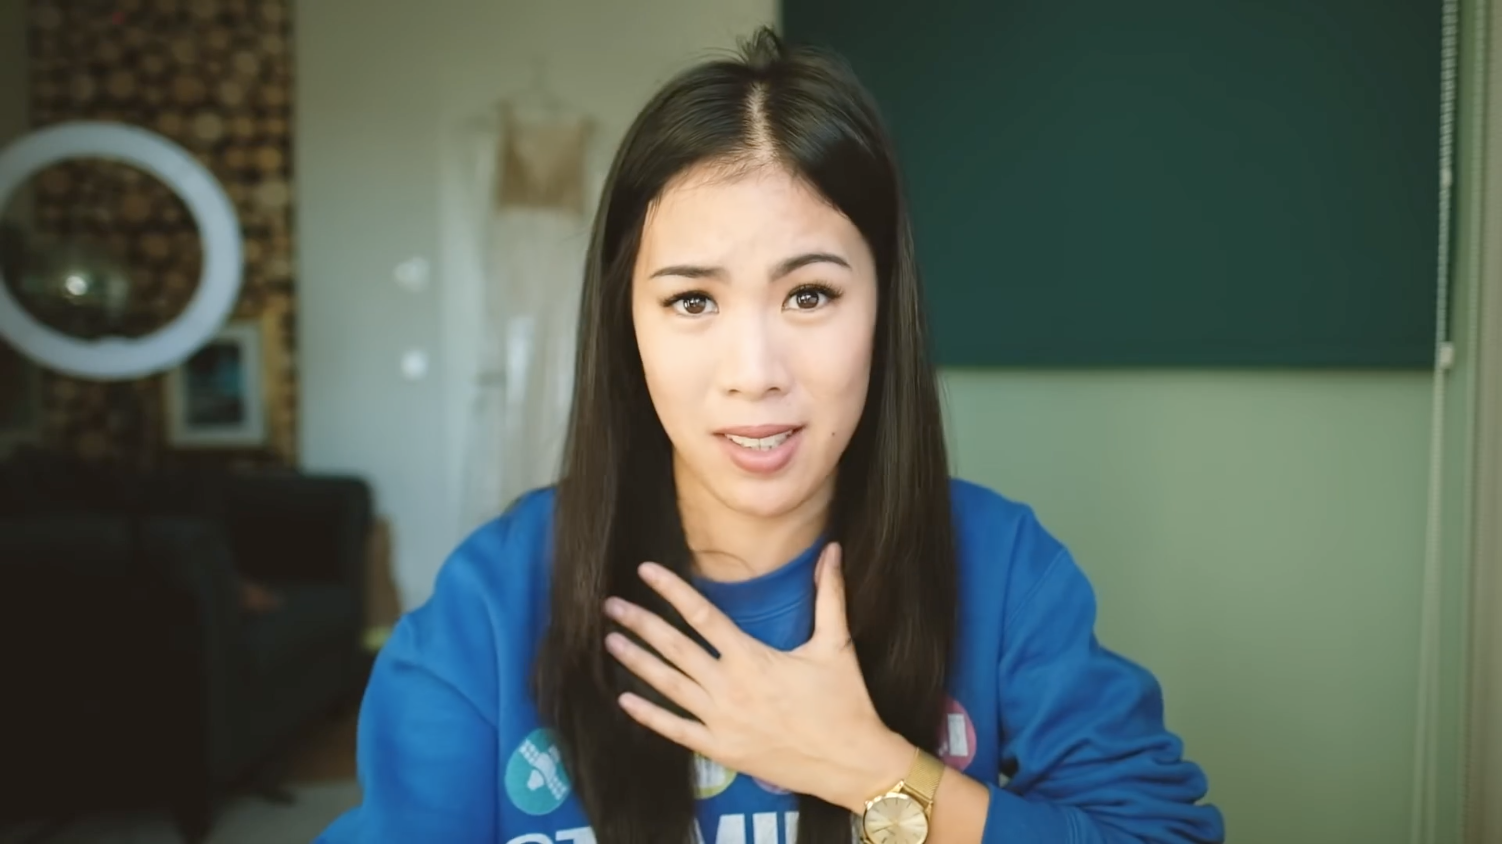 Screesnhot/Nahe Einstellung: Eine junge Frau mit asiatischen Gesichtszügen, blauem Pullover blickt direkt in die Kamera.